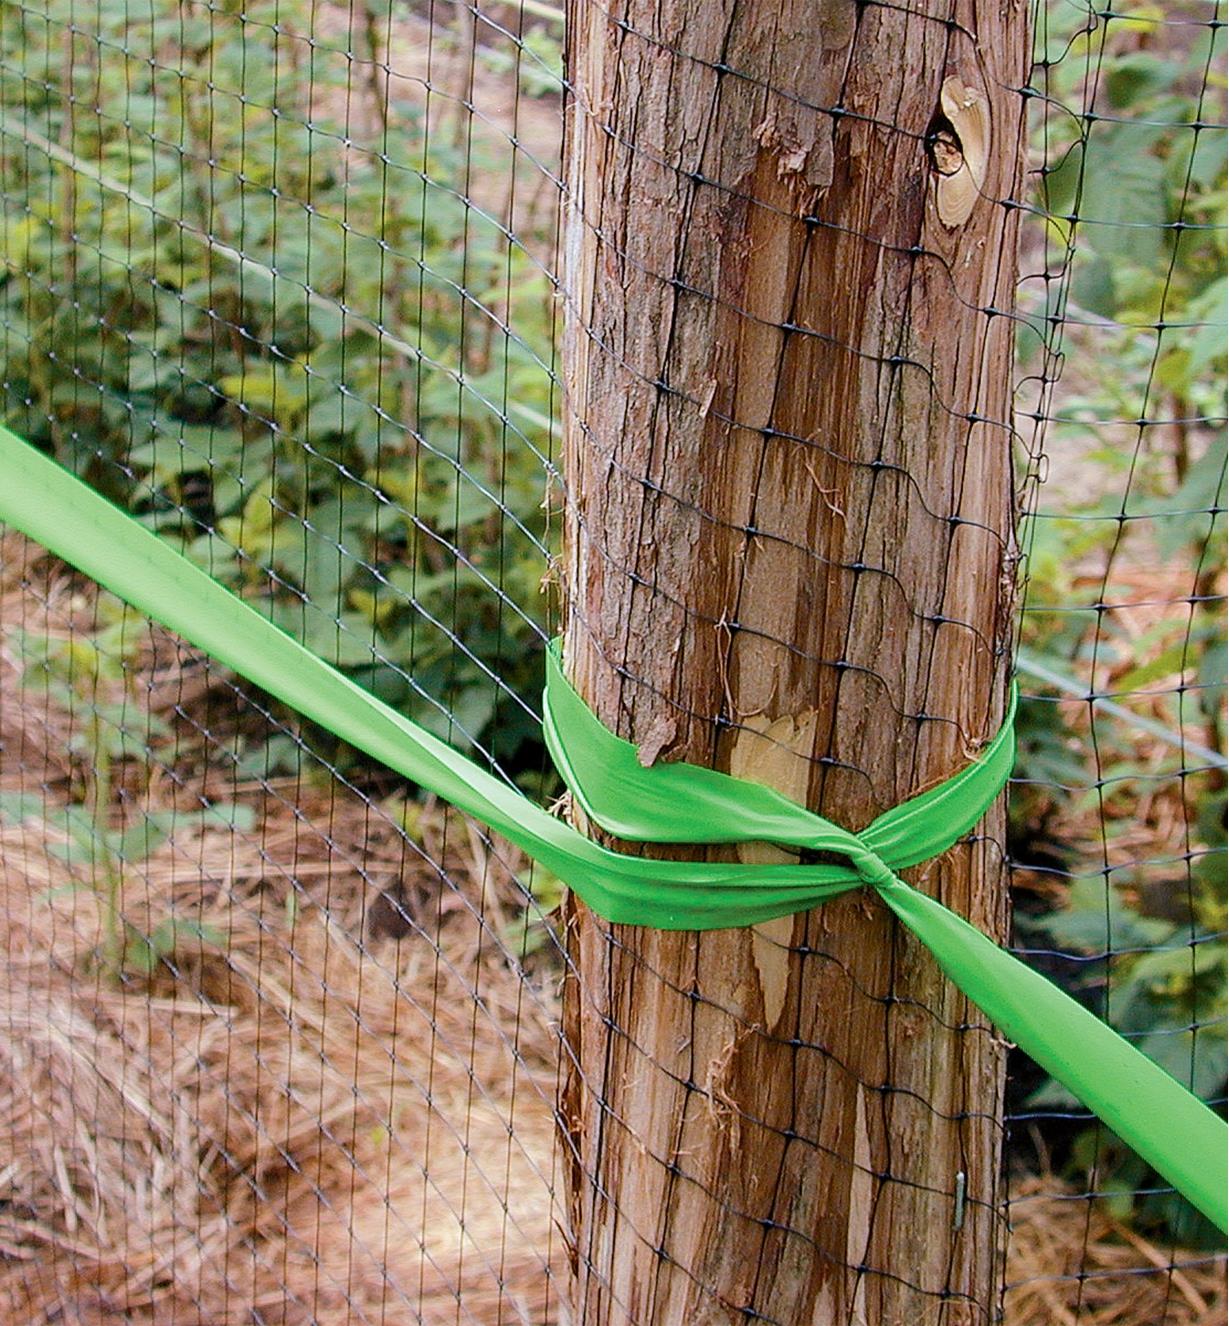 Ruban vert attaché à un poteau le long d'une clôture à chevreuil